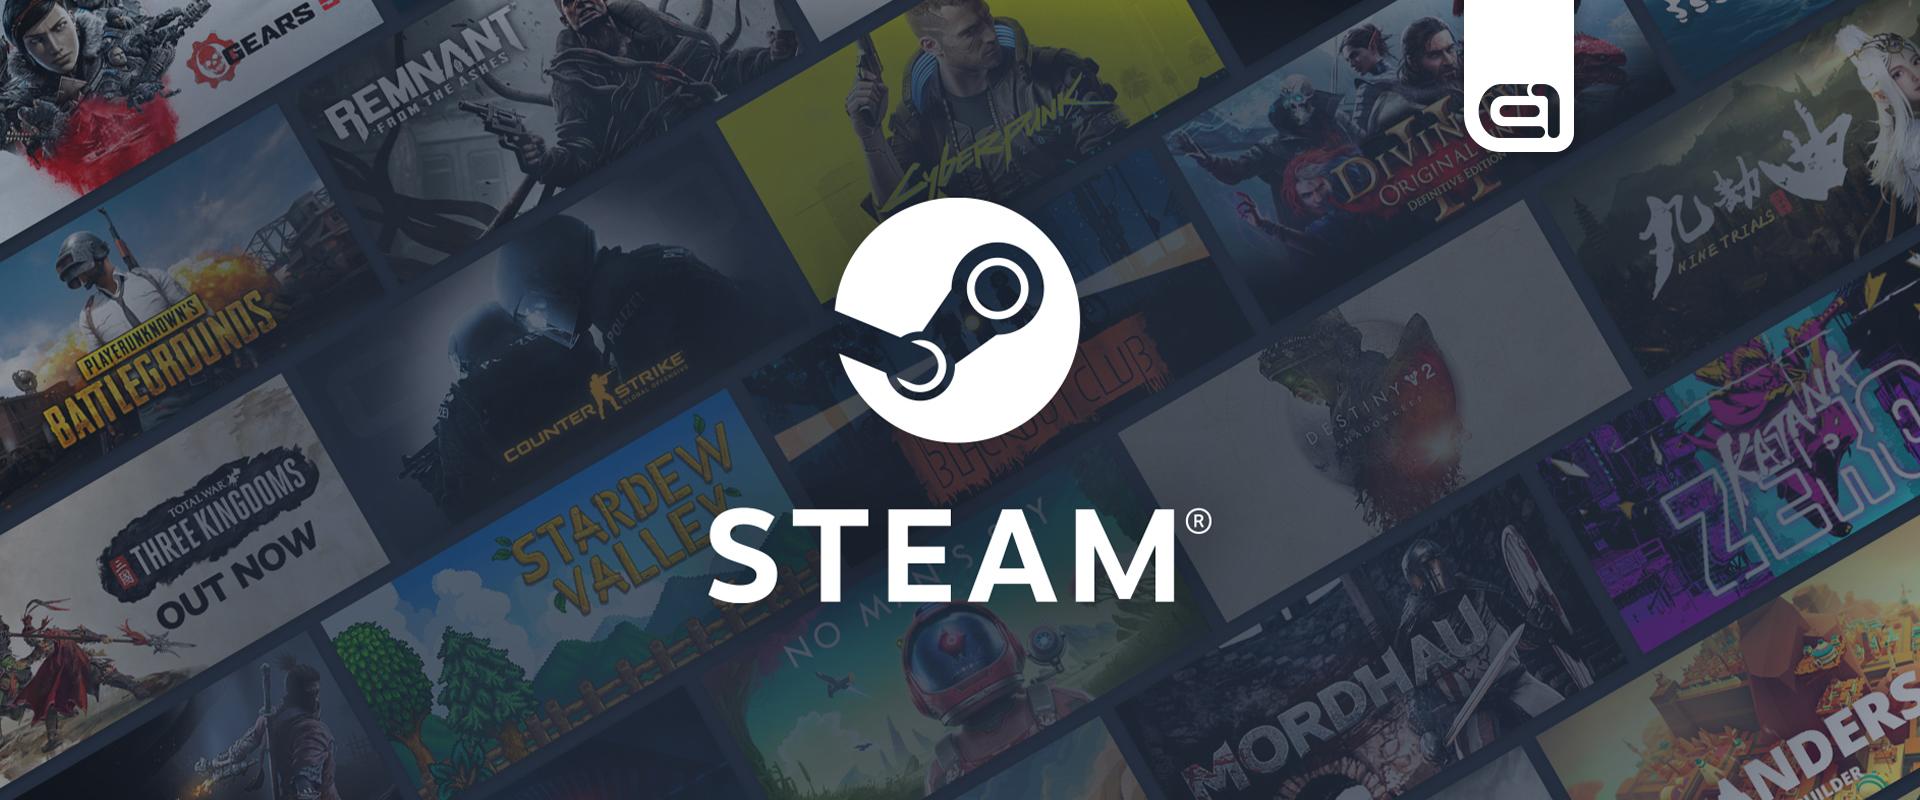 Gaming: Bejelentette az új konzolját a Steam, azaz a Valve